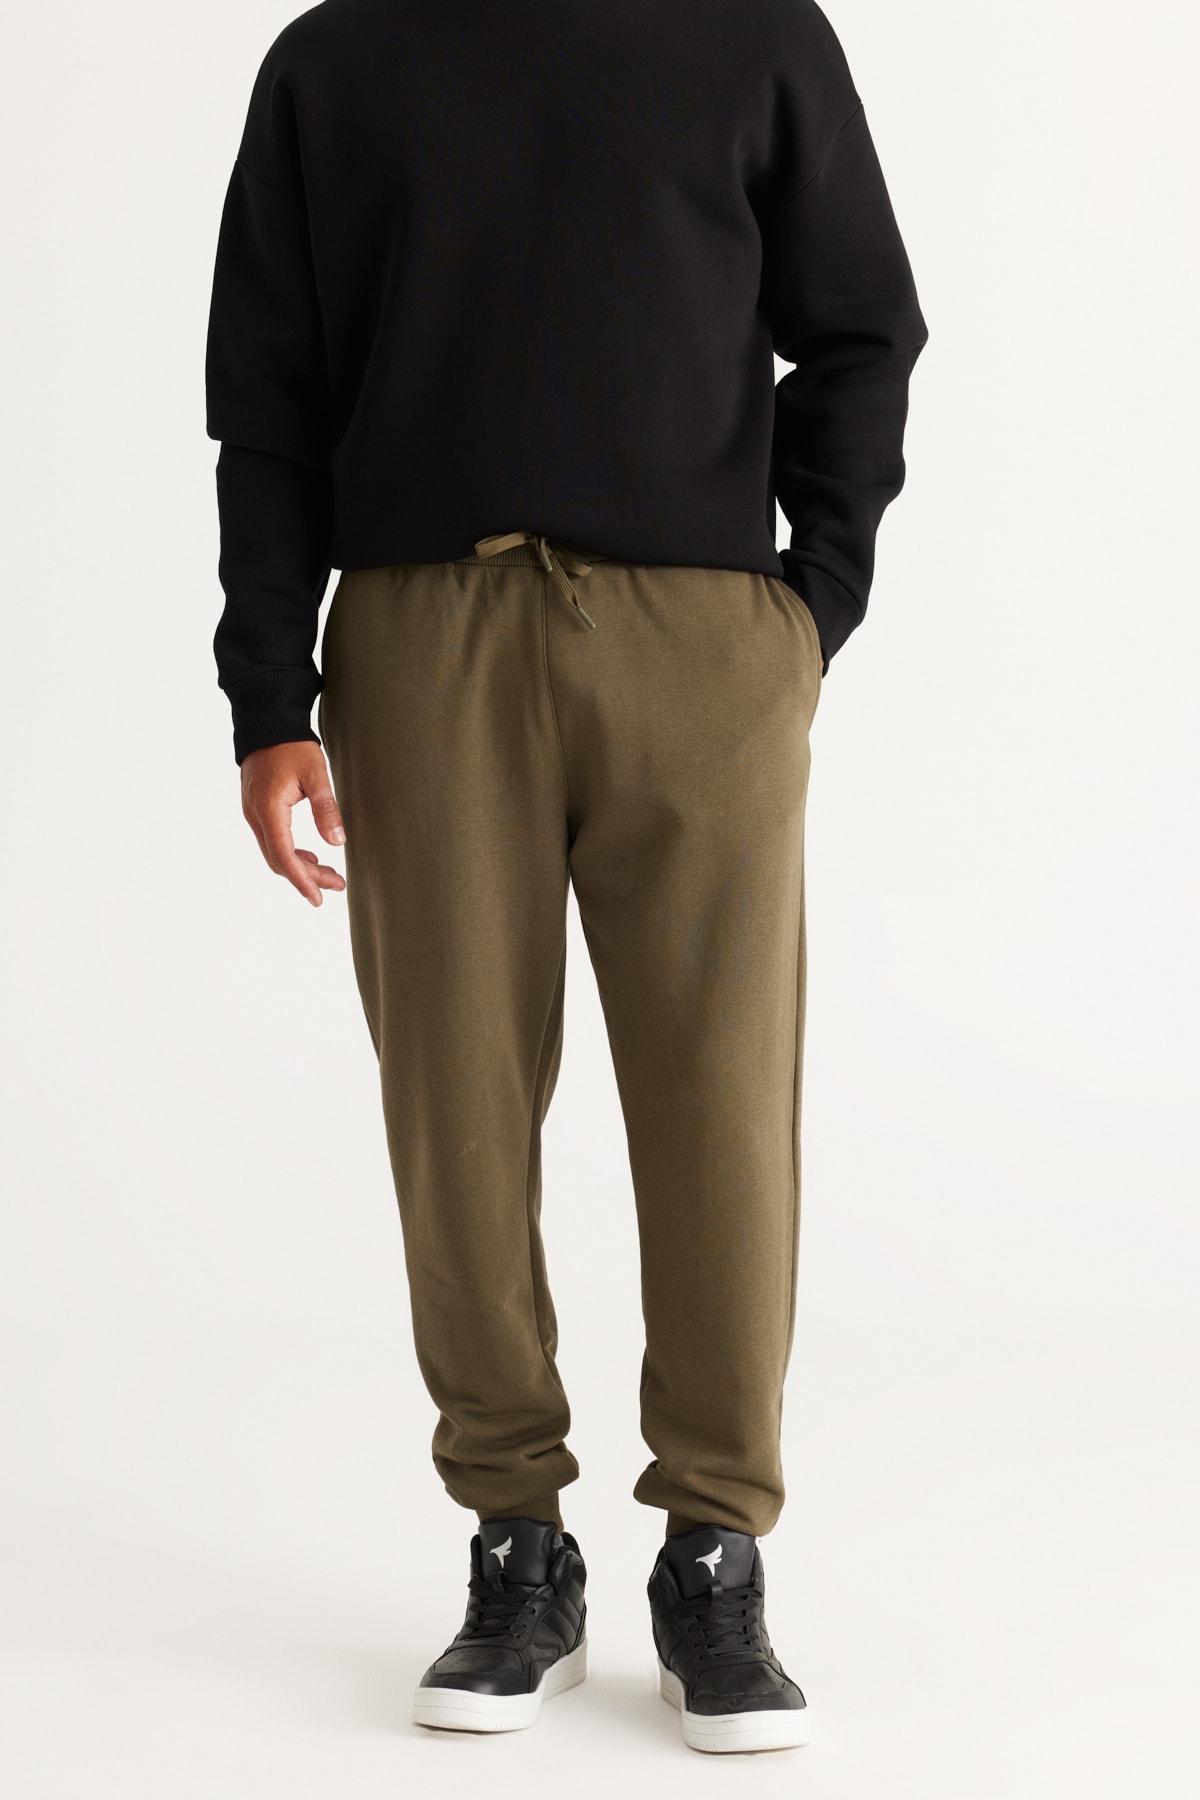 Levně AC&Co / Altınyıldız Classics Men's Khaki Standard Fit Normal Cut Comfortable Cotton Sweatpants with Side Pockets.